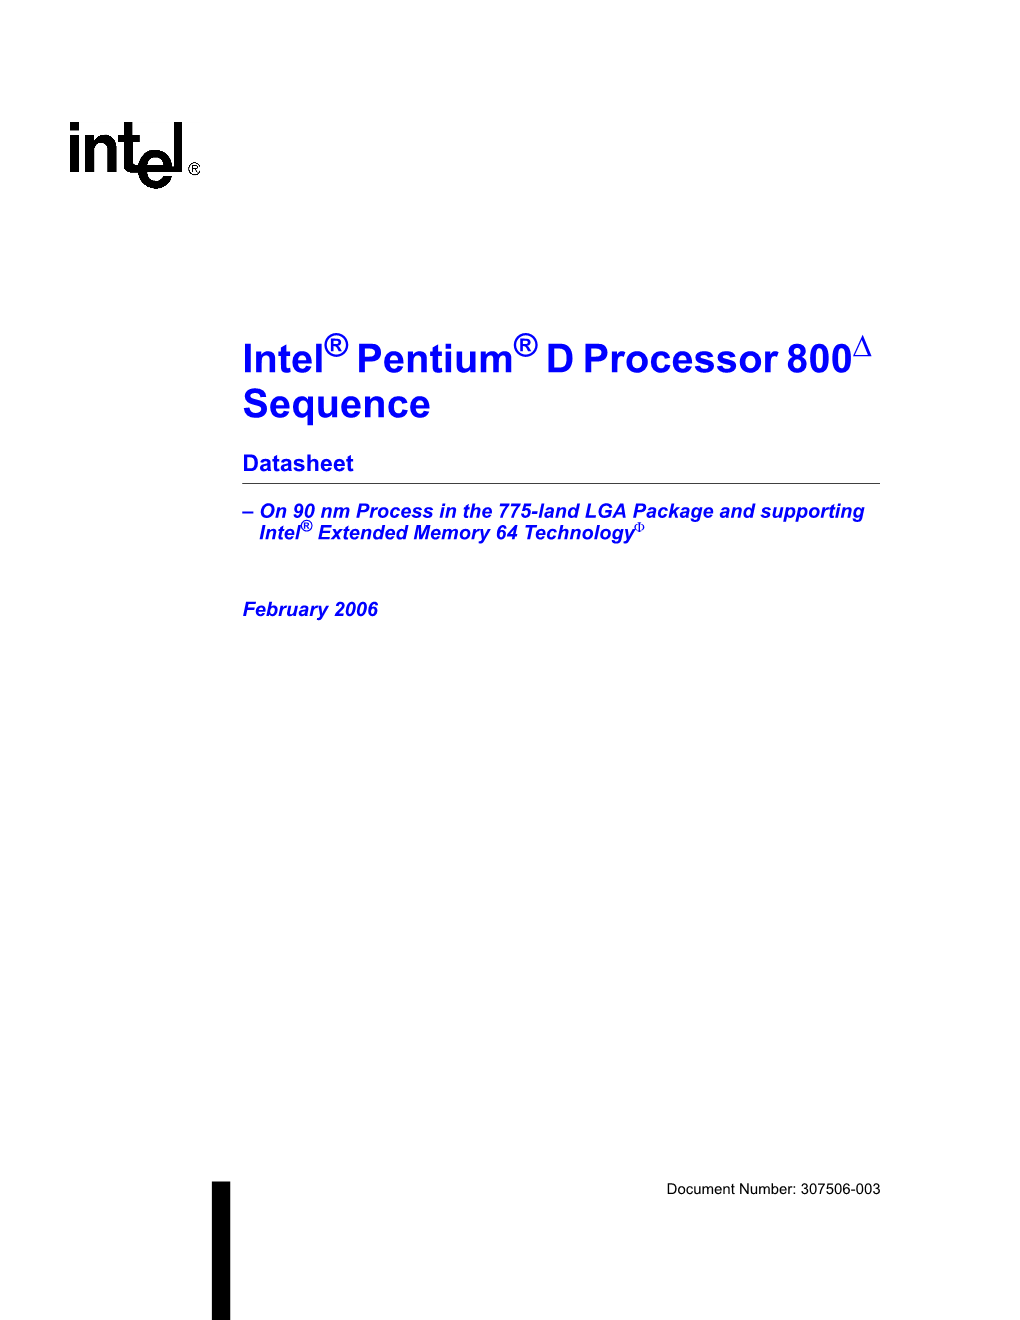 Intel(R) Pentium(R) D Processor Datasheet